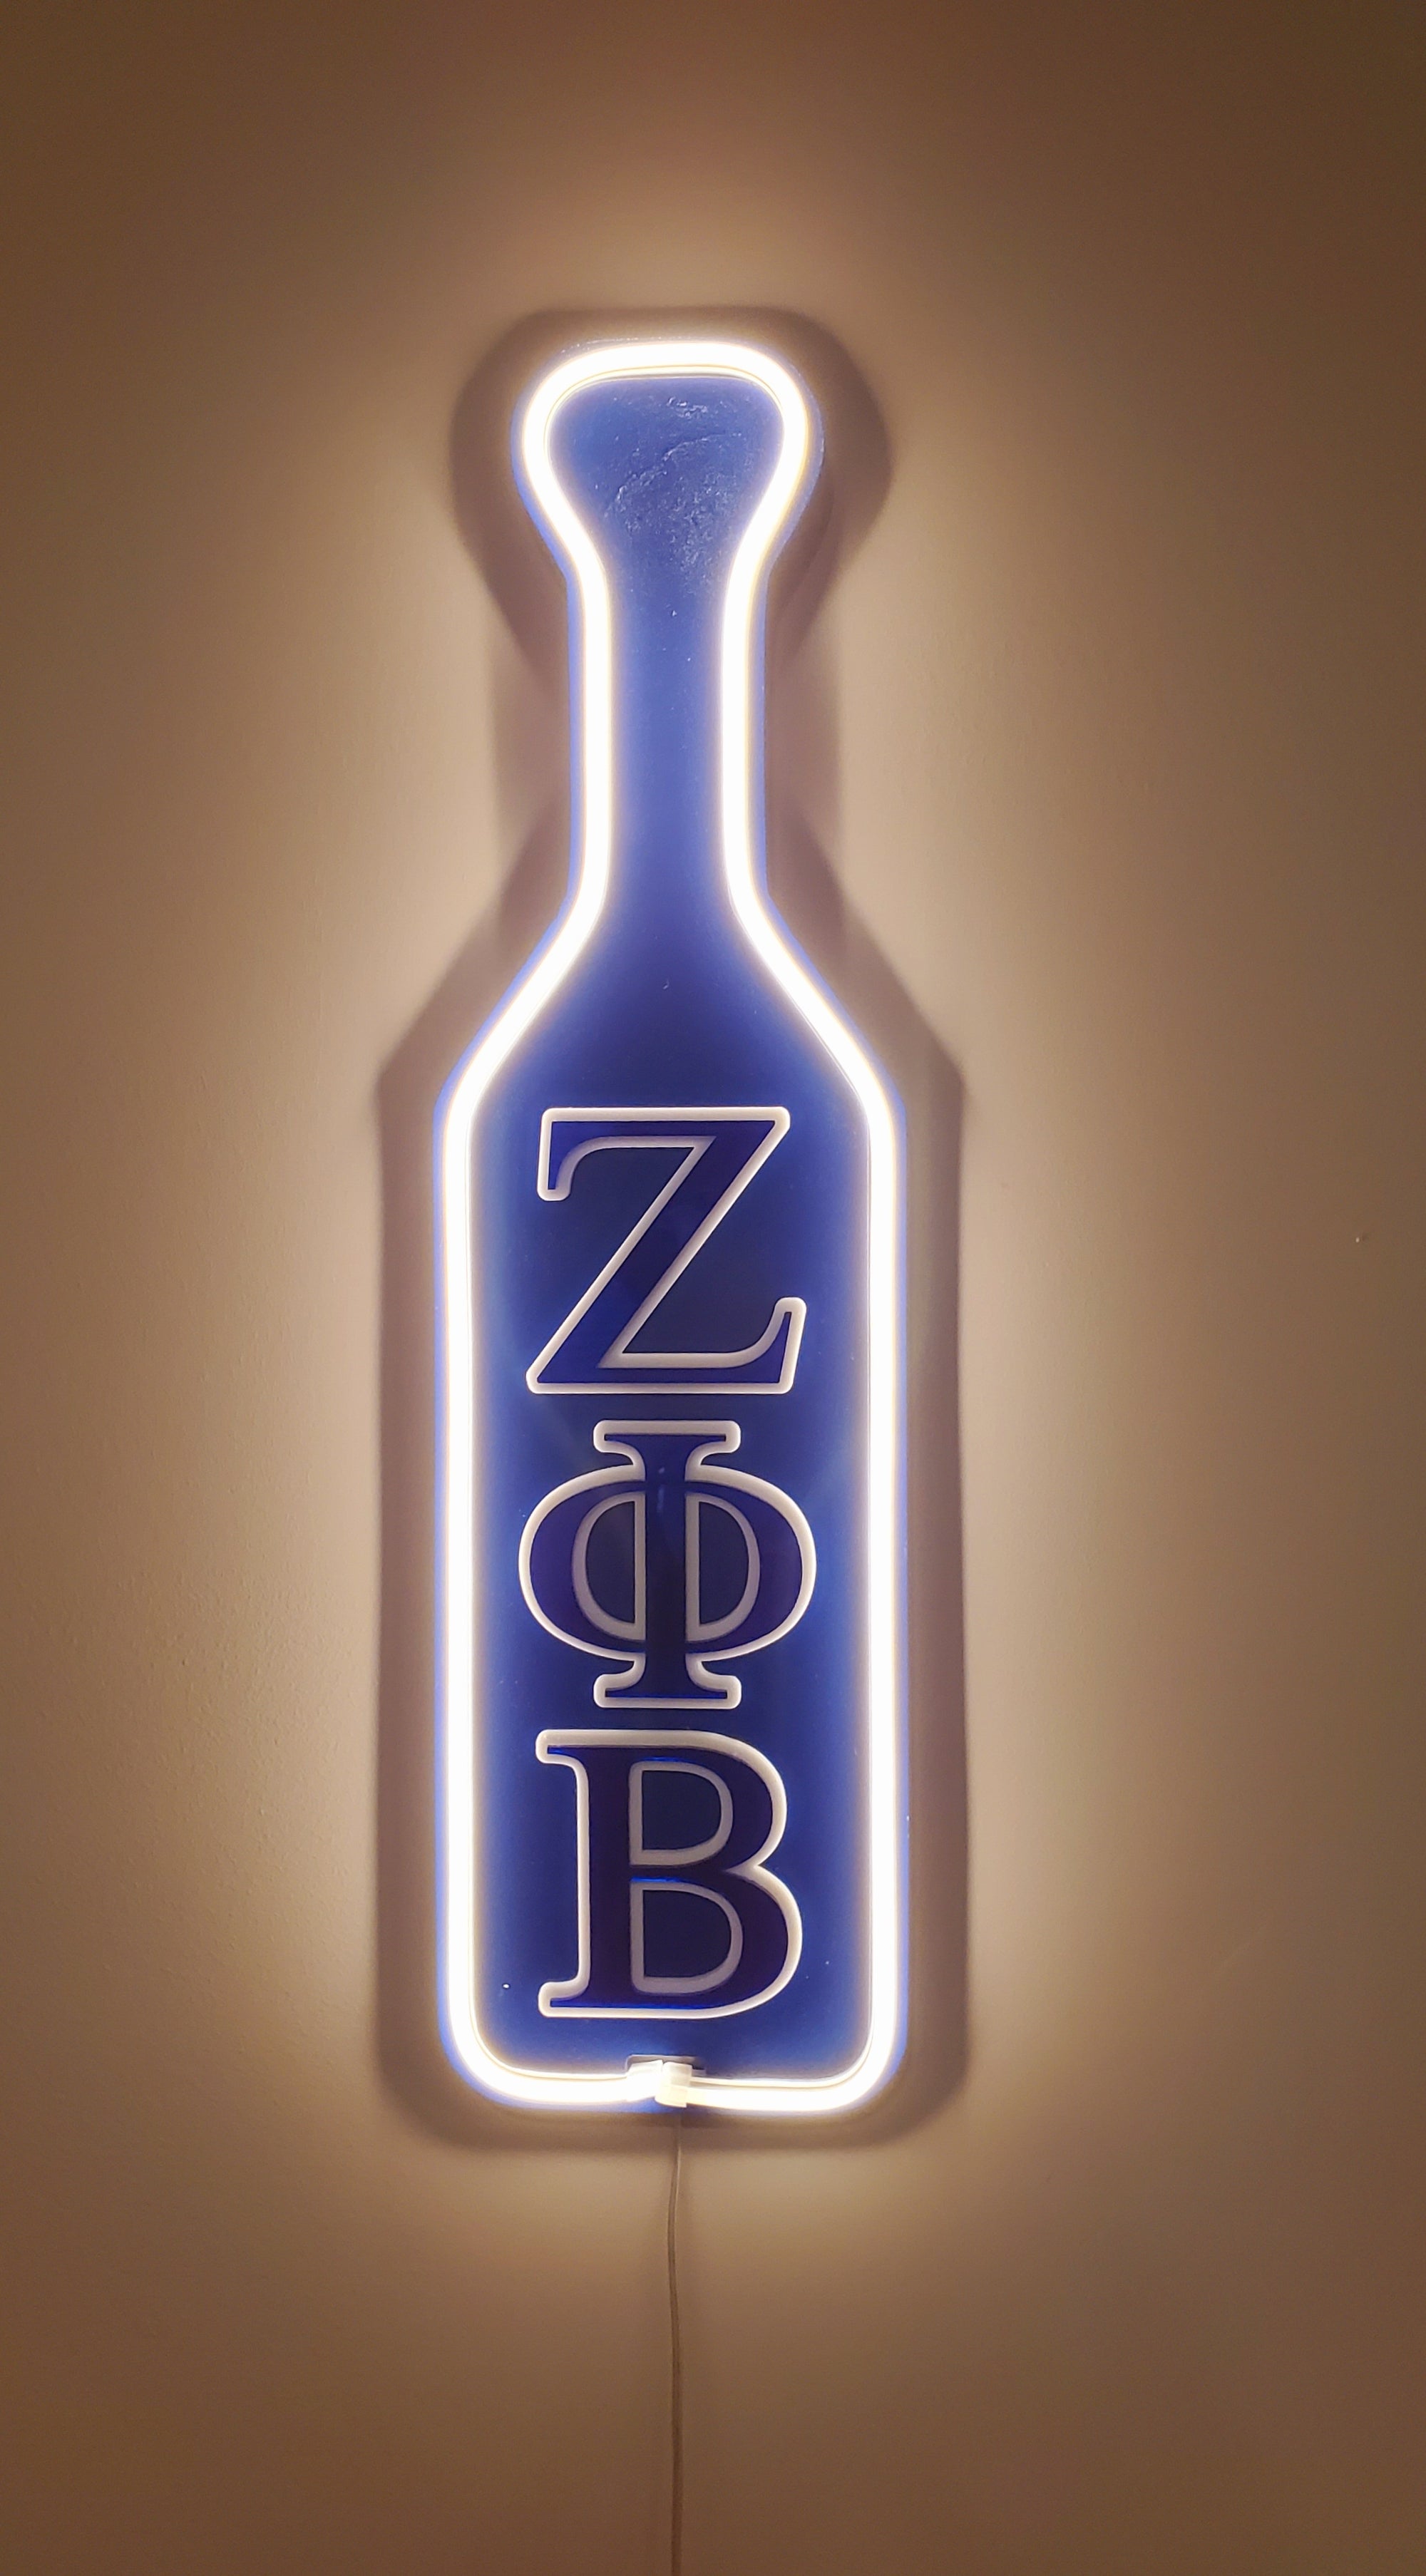 Zeta Phi Beta LED Wooden Paddle